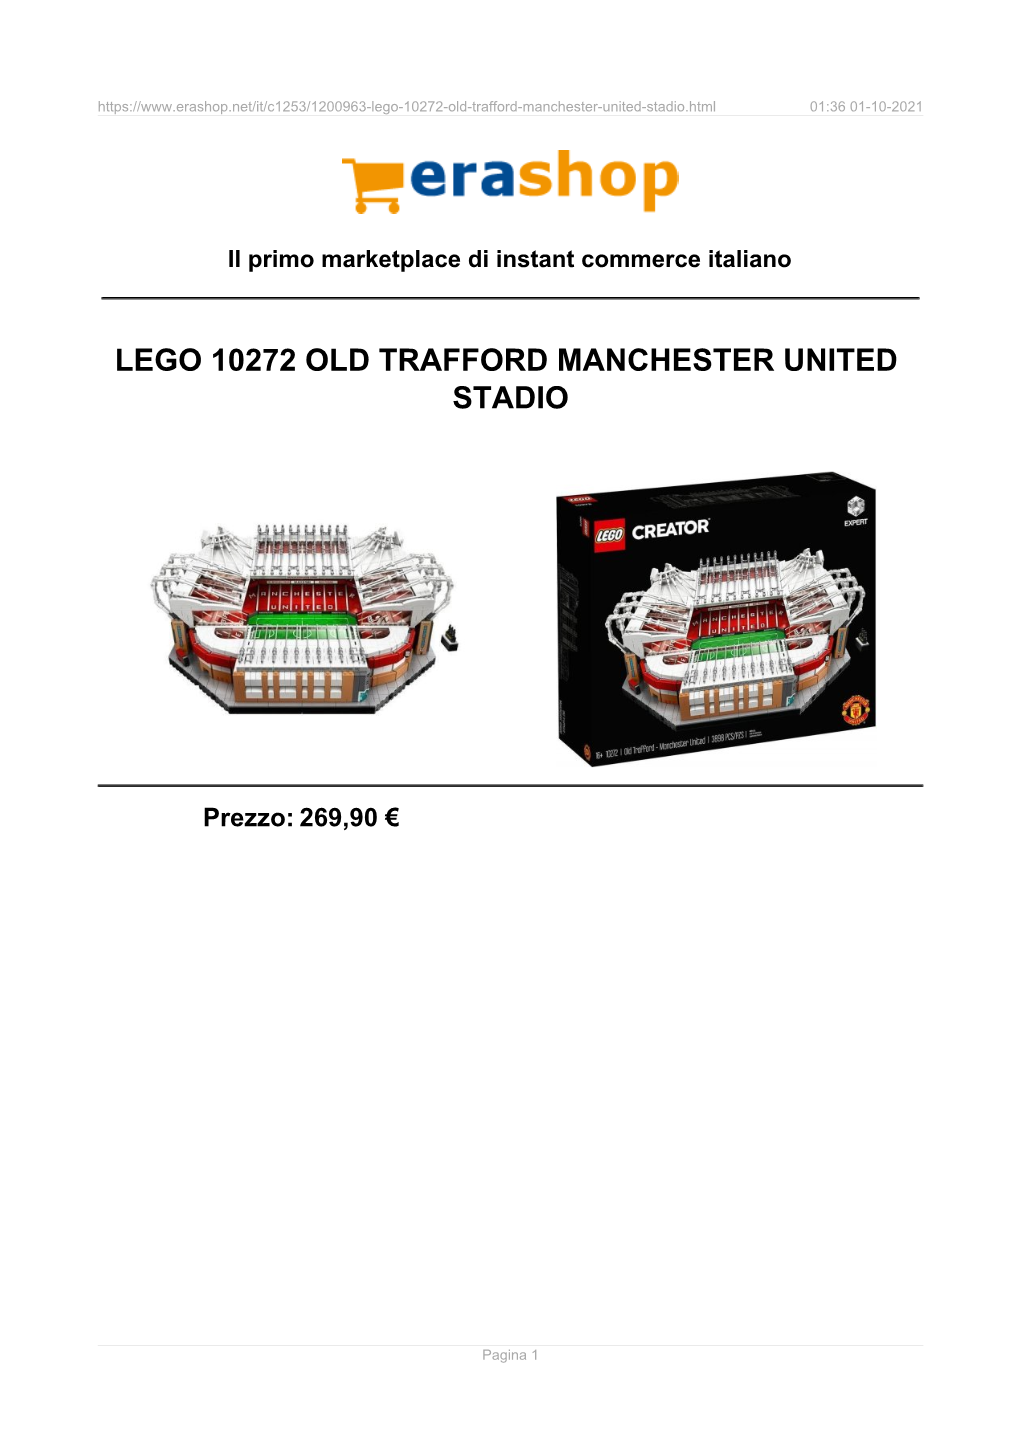 Lego 10272 Old Trafford Manchester United Stadio